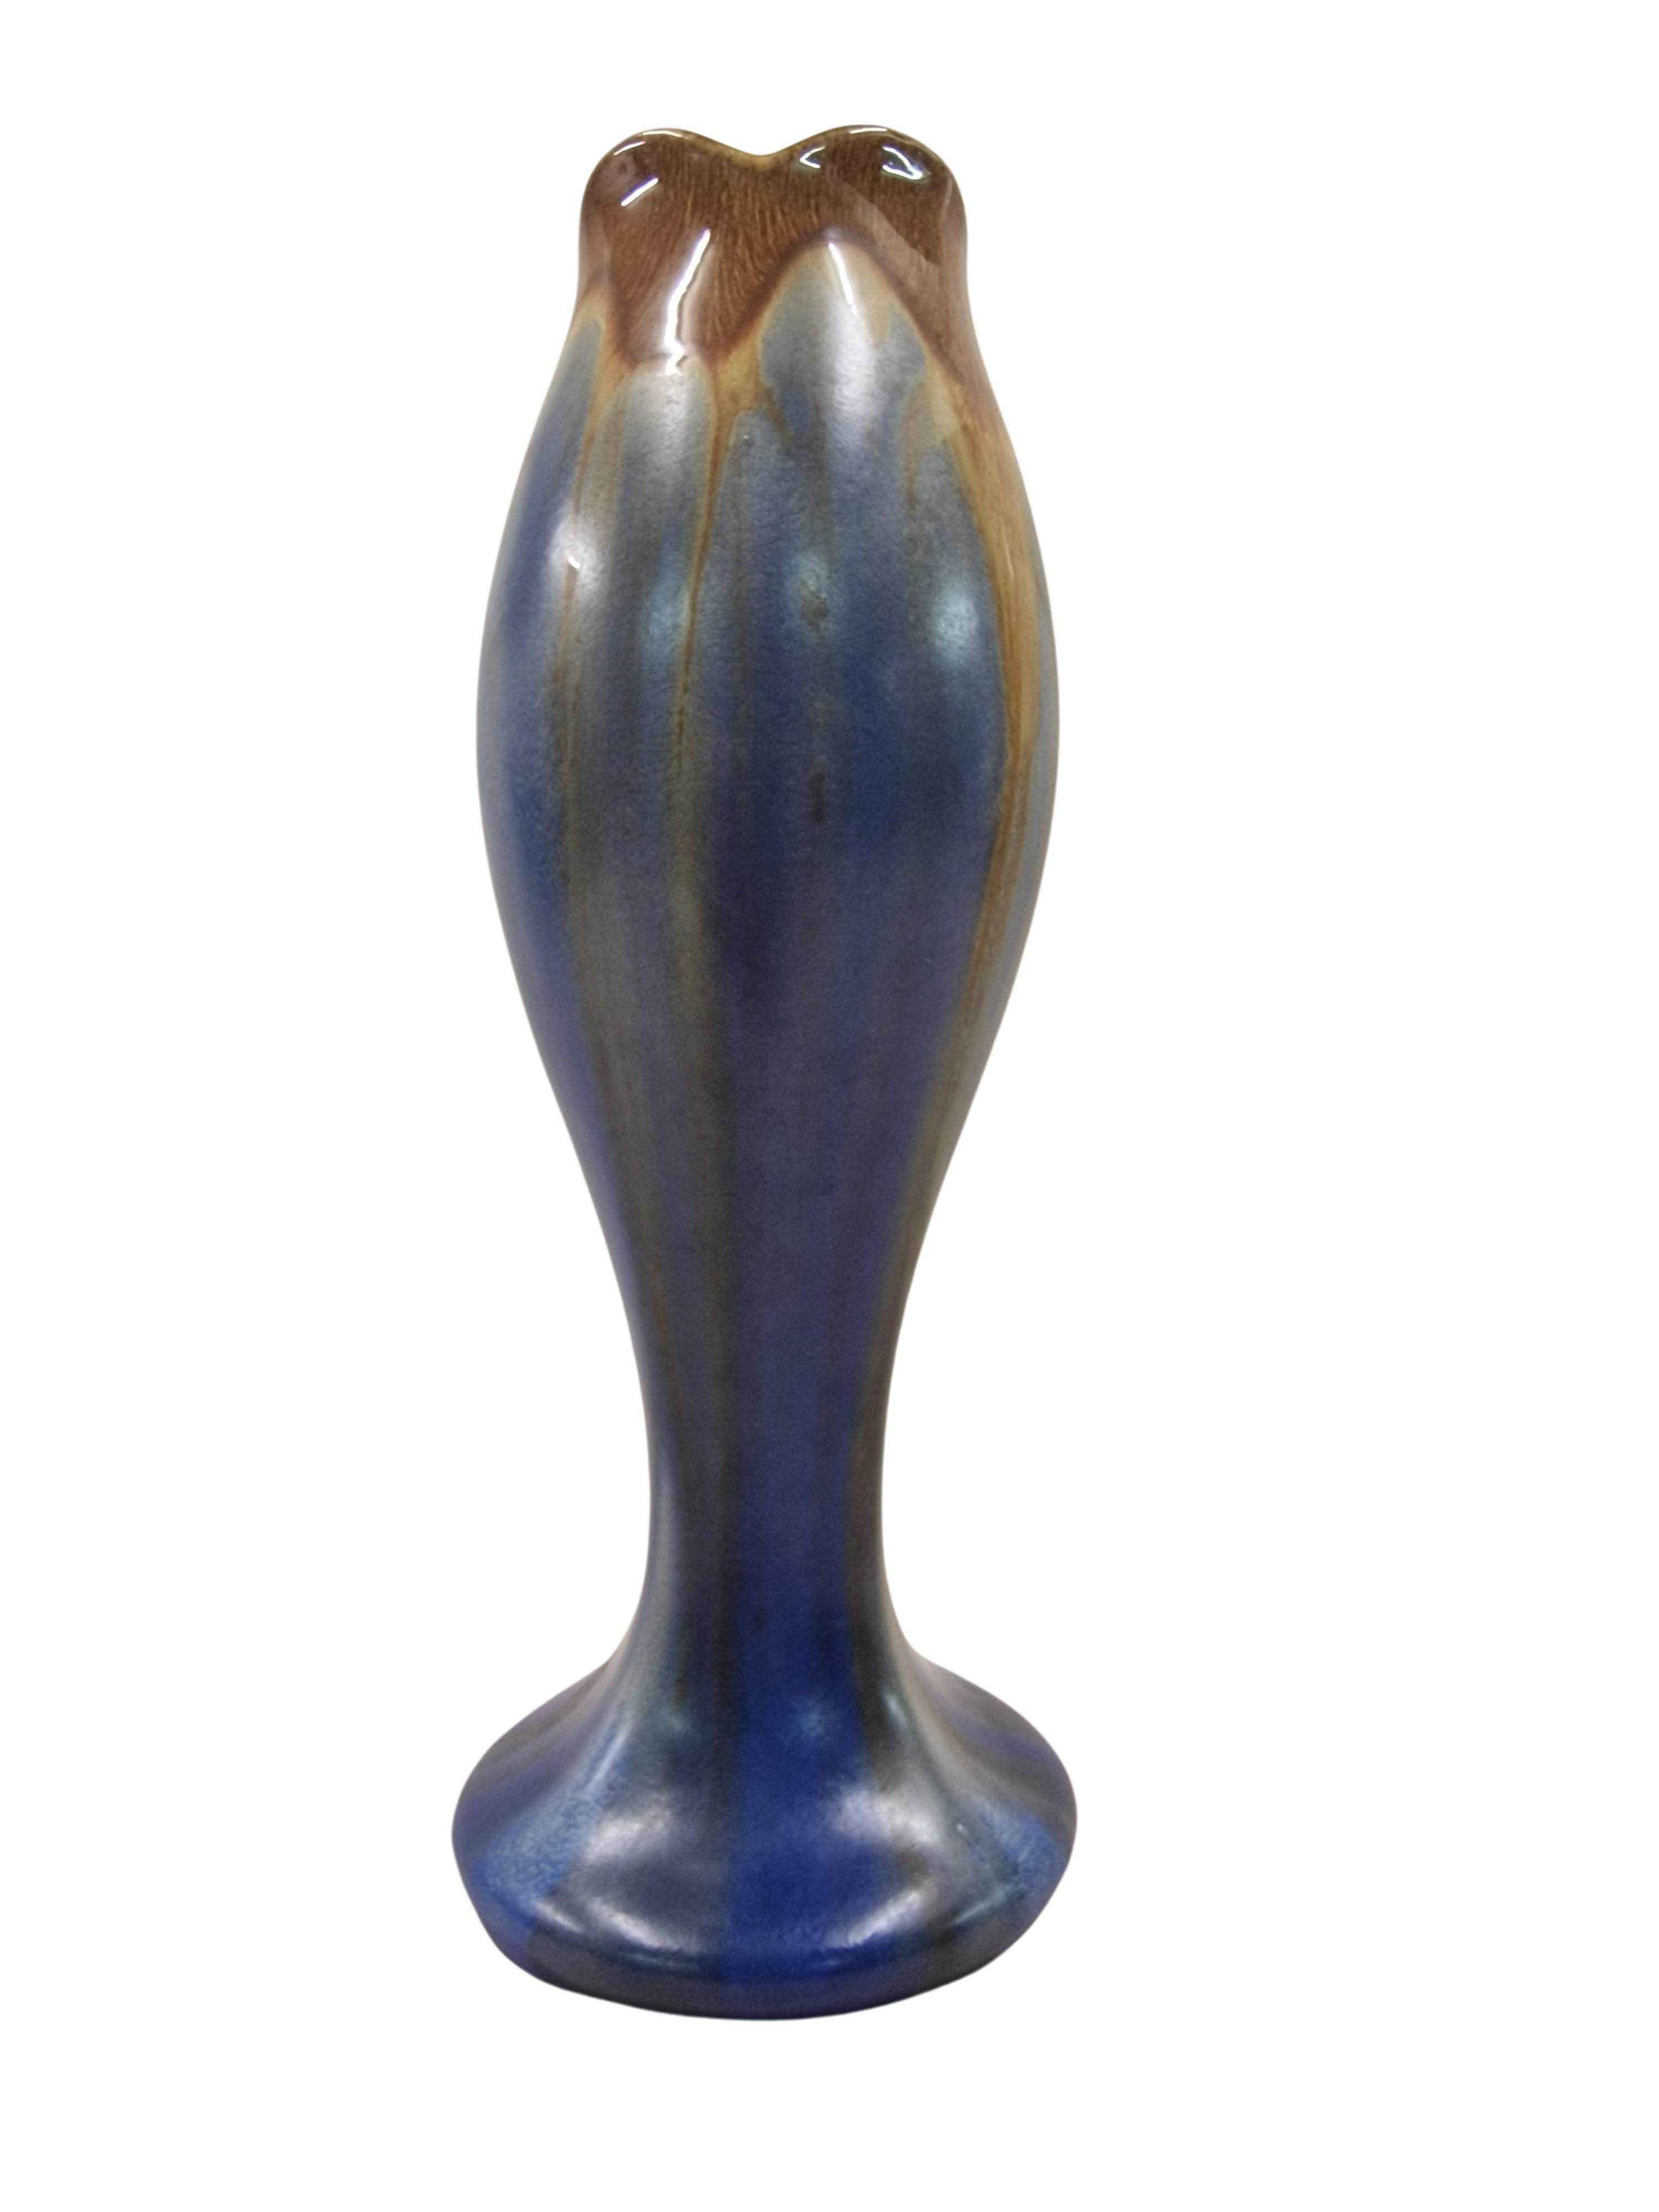 Wunderschöne Blumenvase des berühmten Herstellers Thulin aus Belgien, hergestellt in den 1930er Jahren. 

Die Vase ist in Form wie in Farbigkeit aufwendig gestaltet. Der runde Sockel geht in eine erhabene, bauchige Form über, die im oberen Auslauf